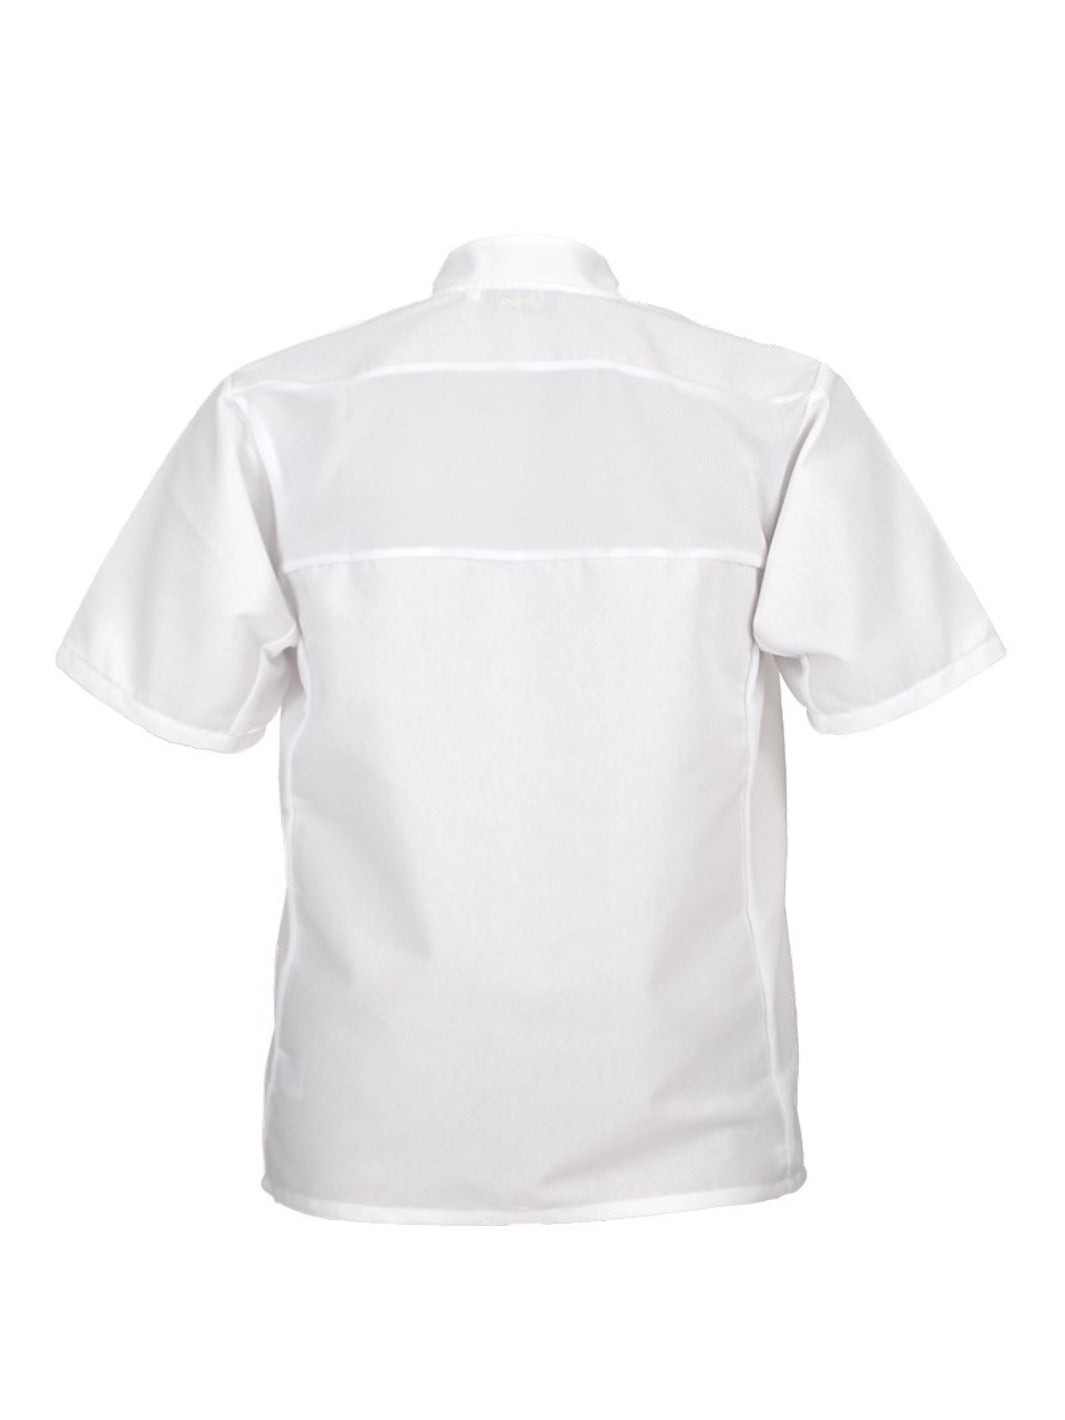 Espalda de chaqueta para chef color blanco con bolsa en manga y botones